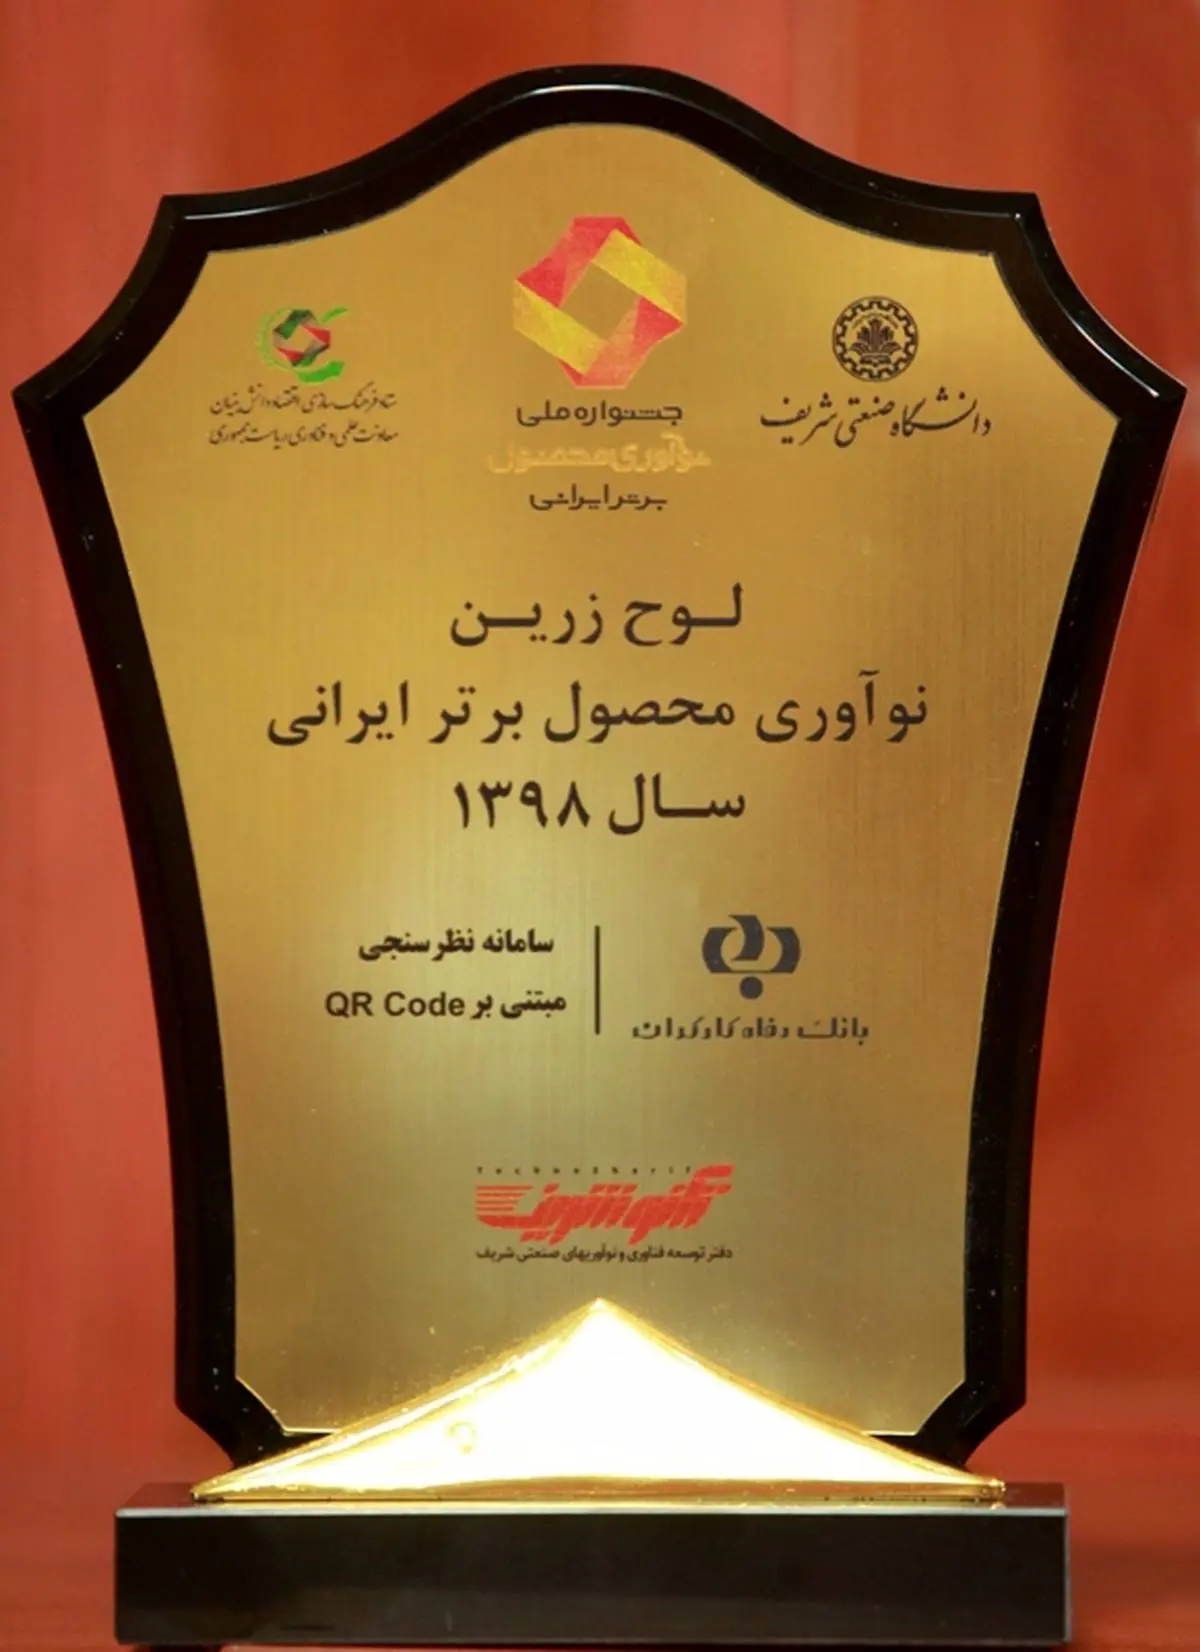 بانک رفاه لوح زرین جشنواره ملی نوآوری محصول برتر ایرانی را دریافت کرد
